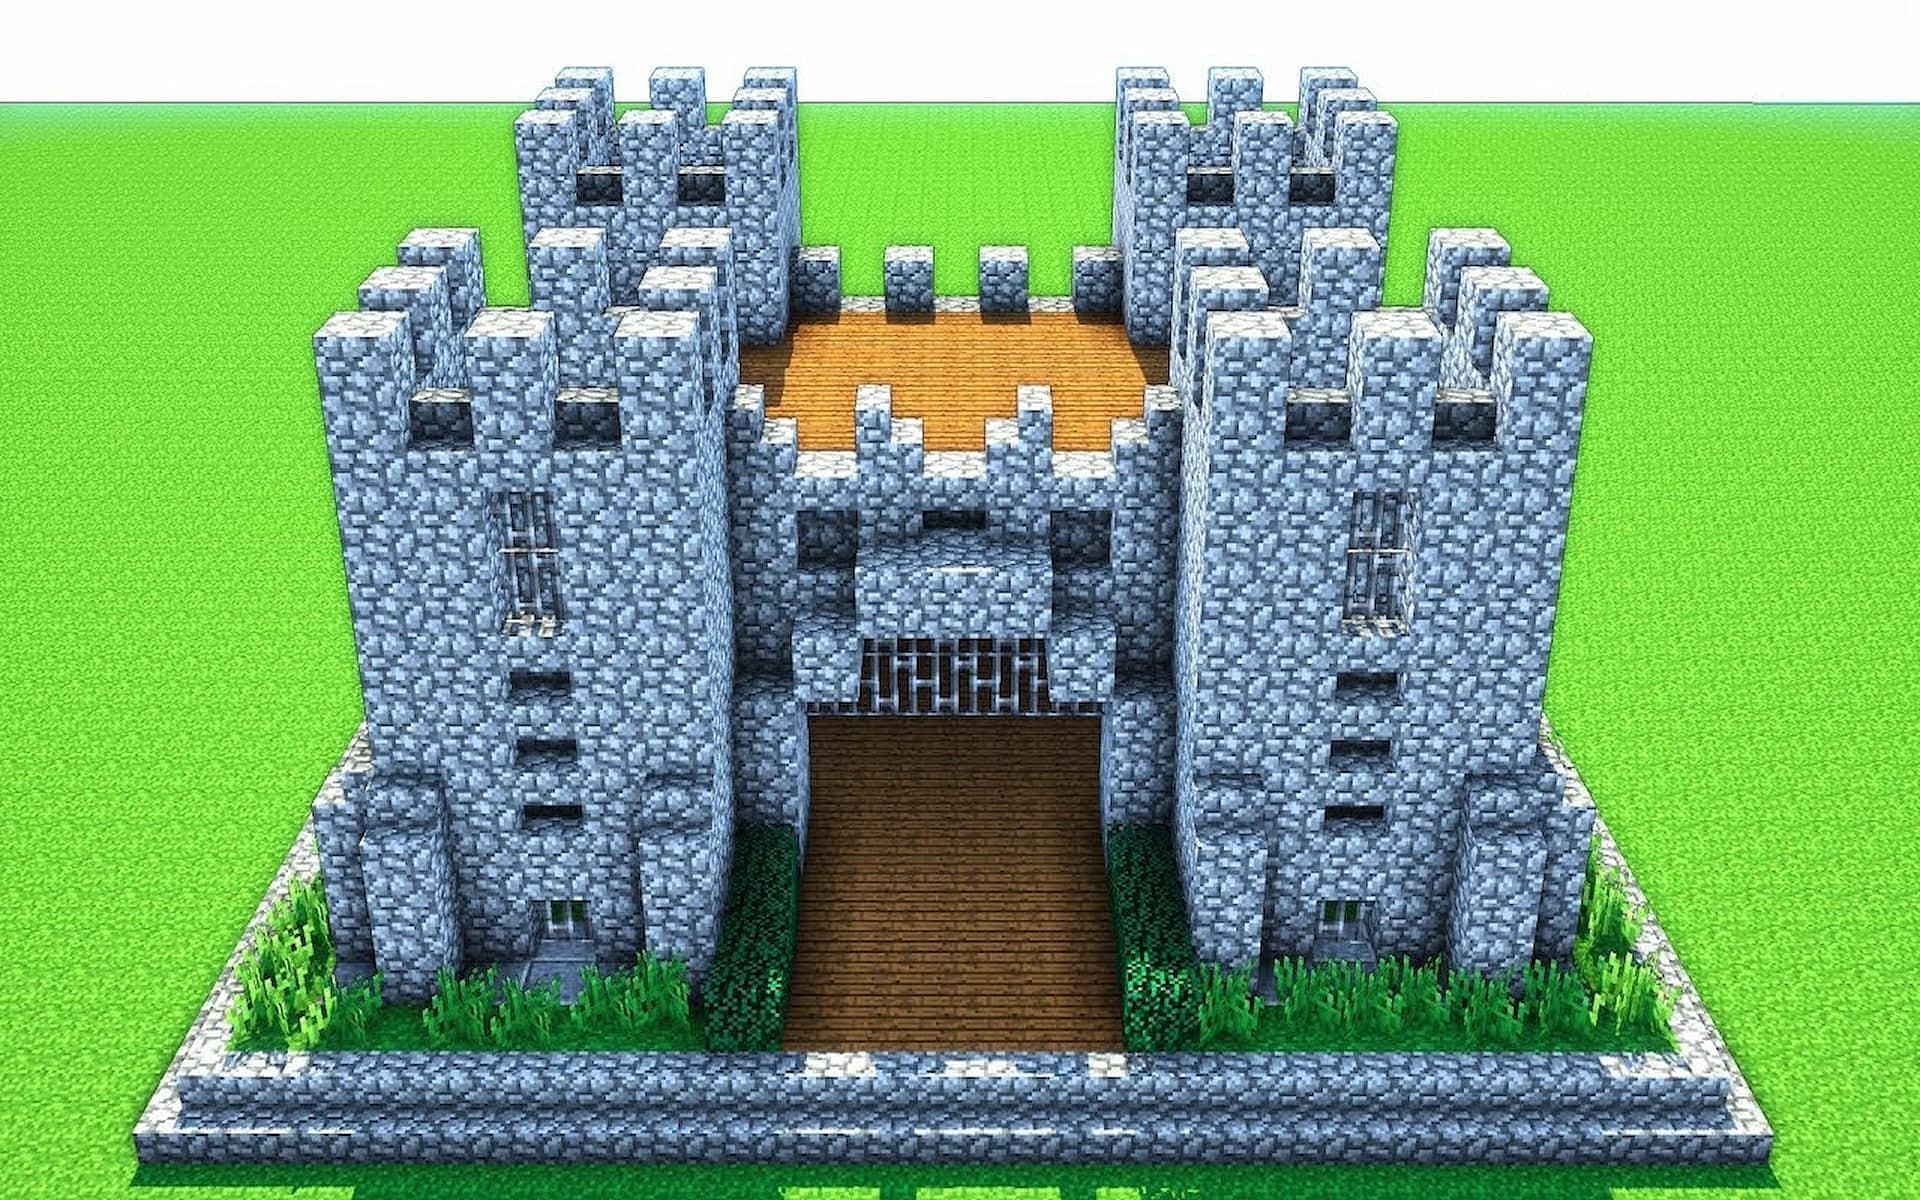 simple castle layout